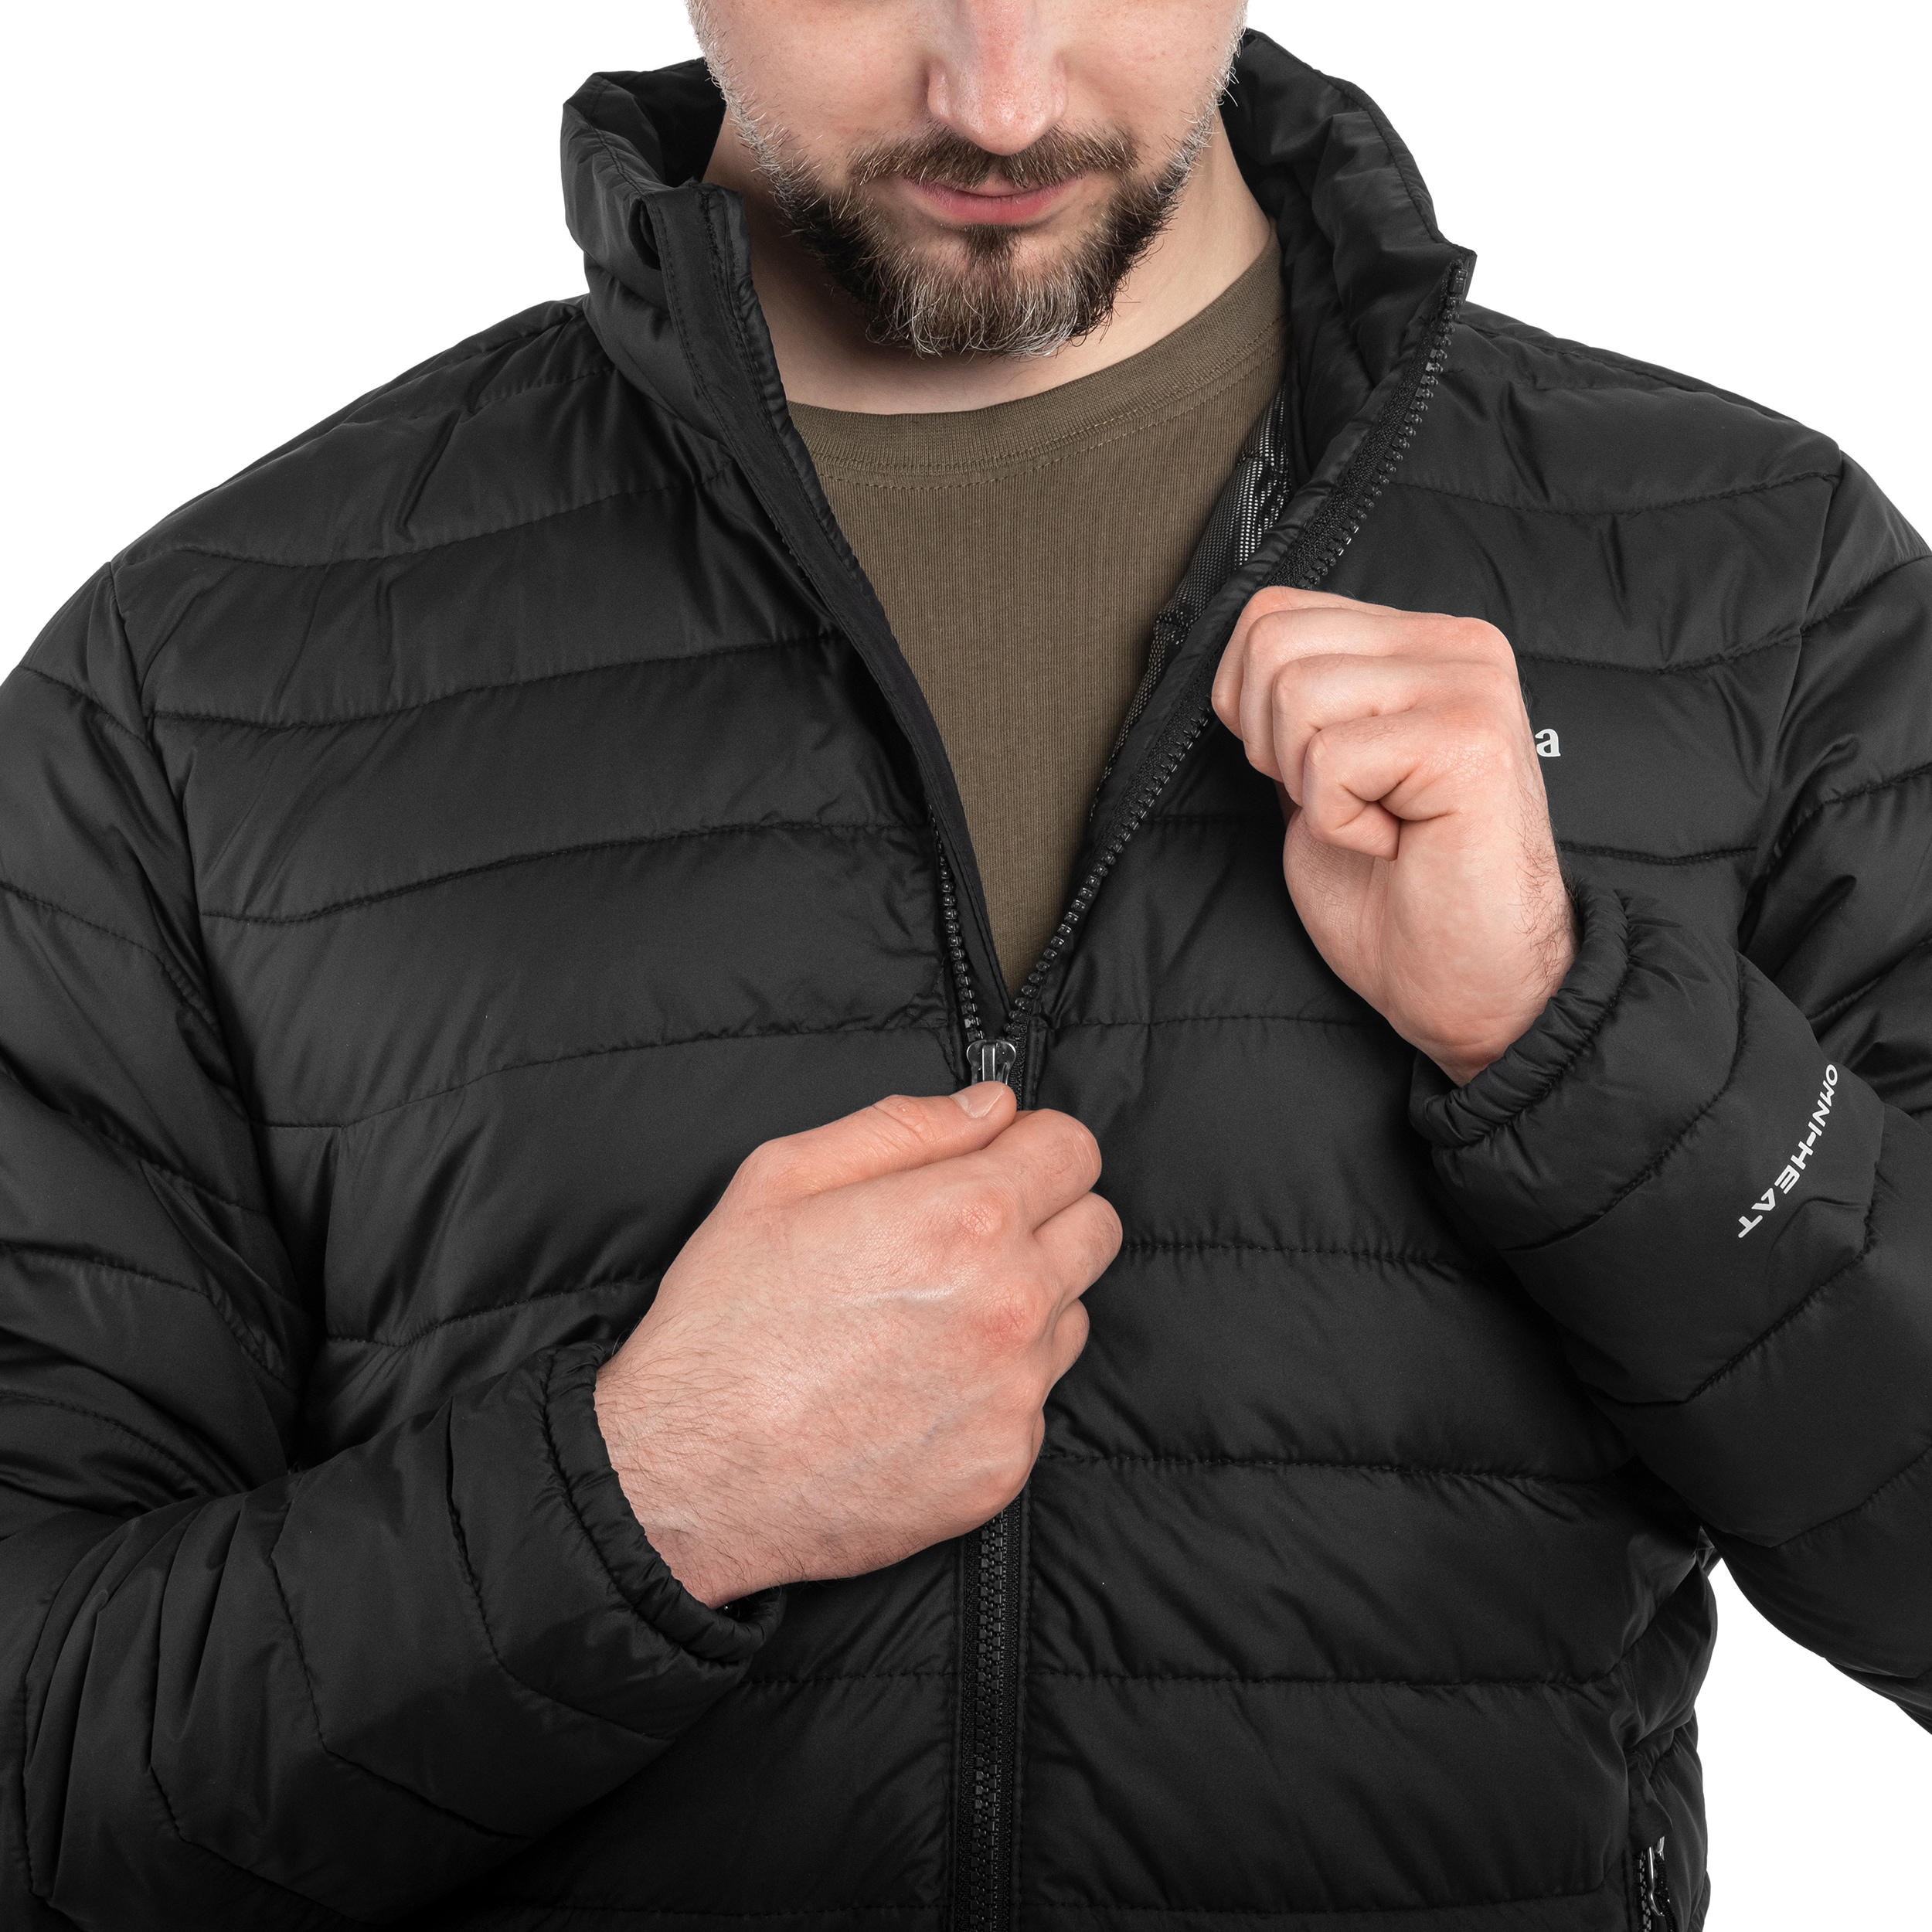 Куртка Columbia Powder Lite Jacket - Black